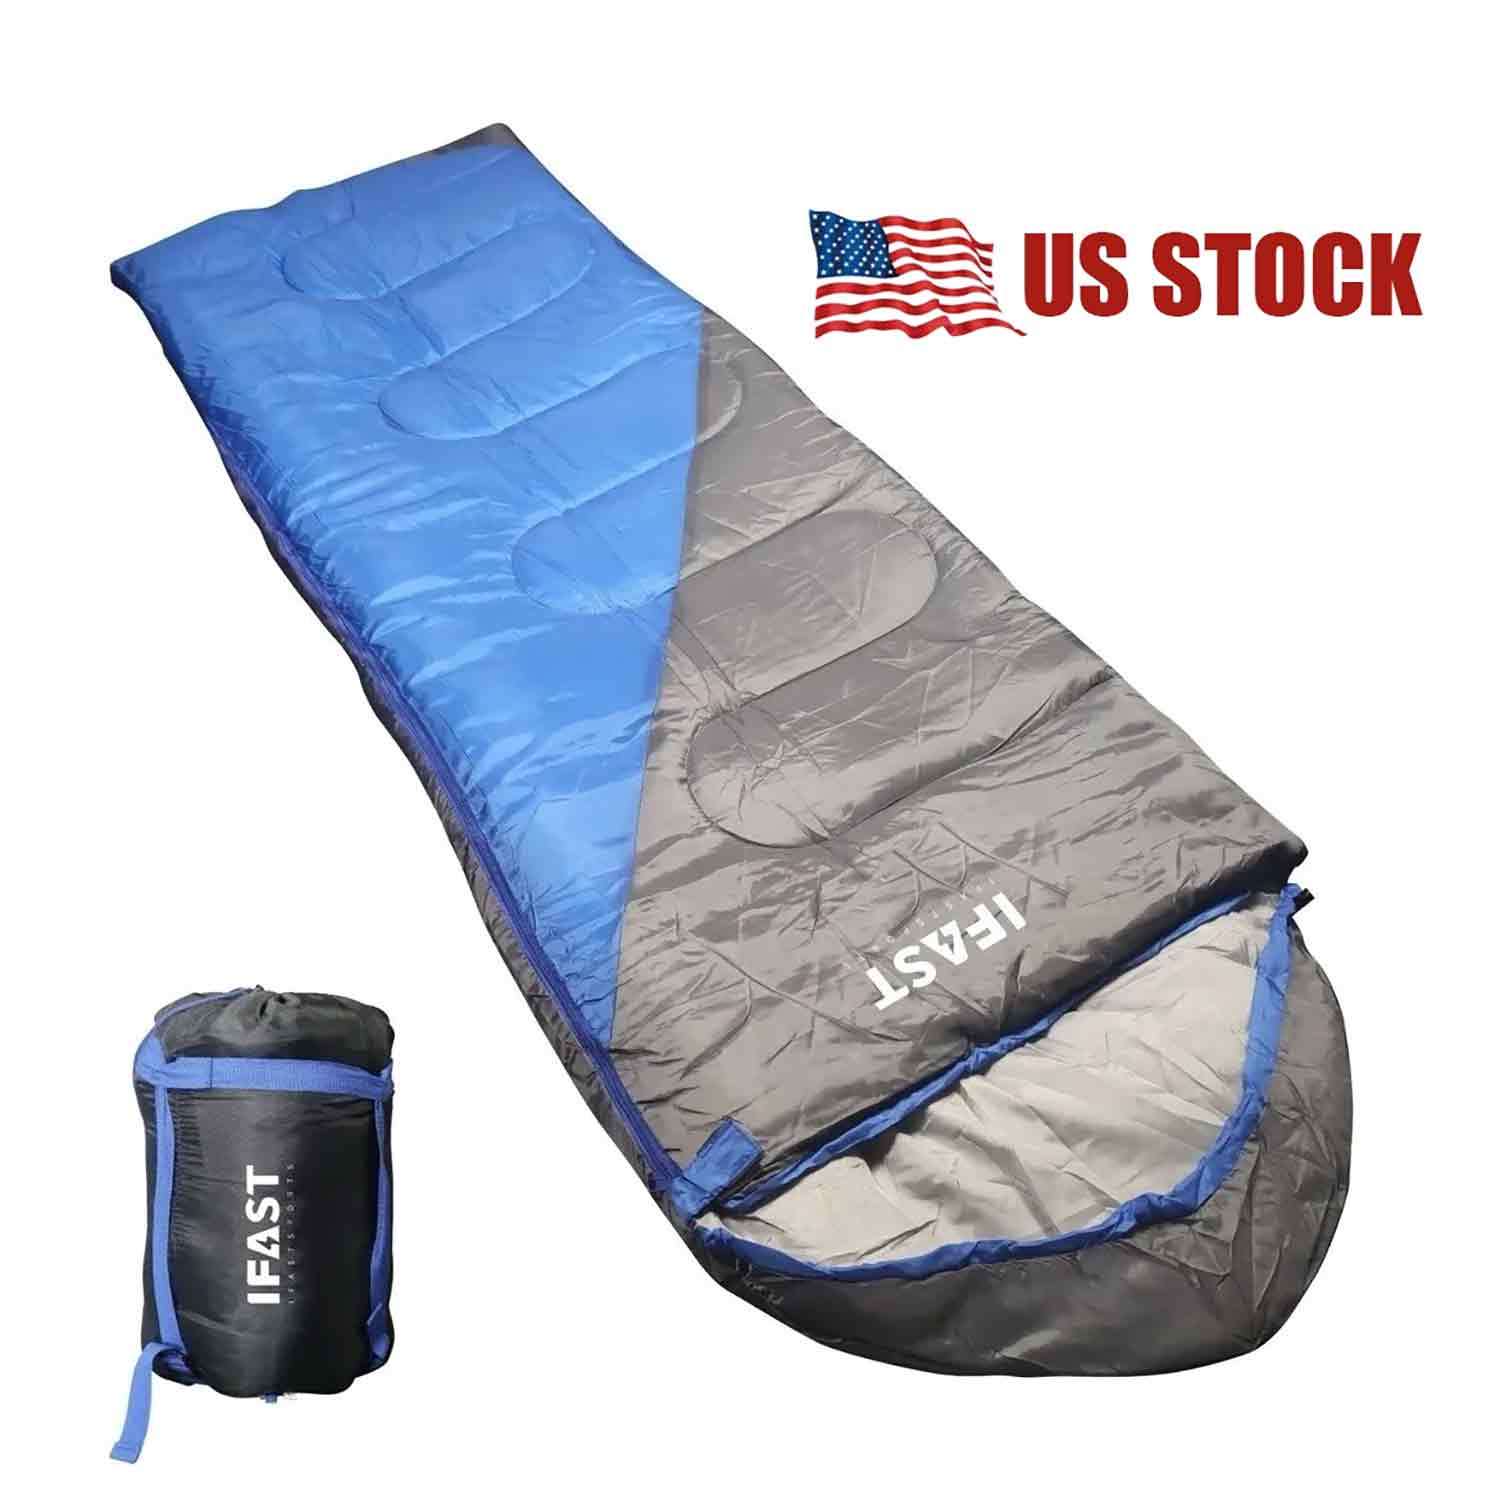 

Lightweight Sleeping Bag Waterproof Camping Gear Equipment